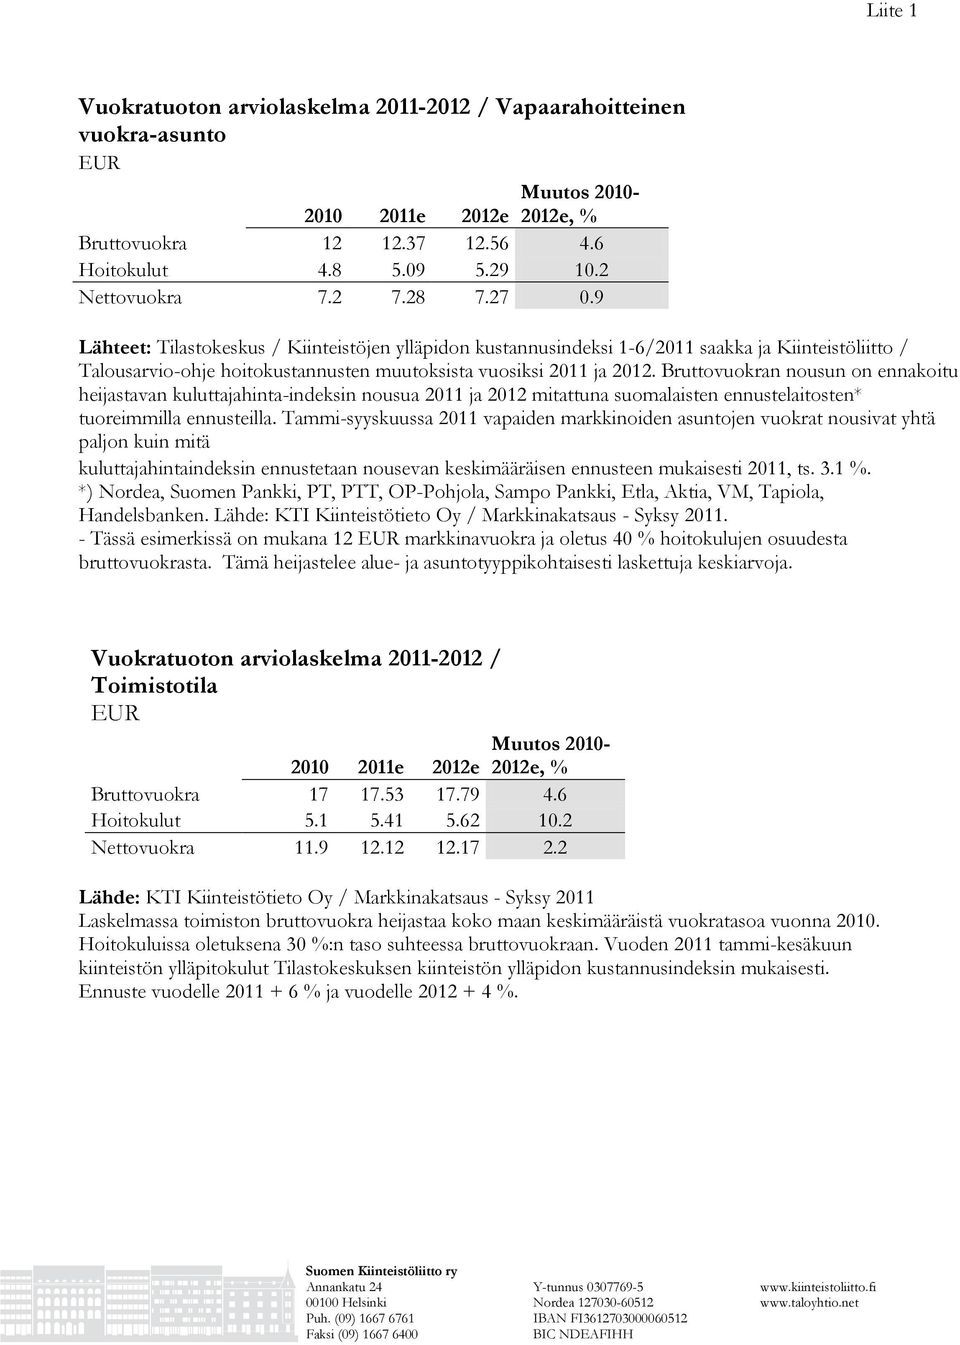 Bruttovuokran nousun on ennakoitu heijastavan kuluttajahinta-indeksin nousua 2011 ja 2012 mitattuna suomalaisten ennustelaitosten* tuoreimmilla ennusteilla.